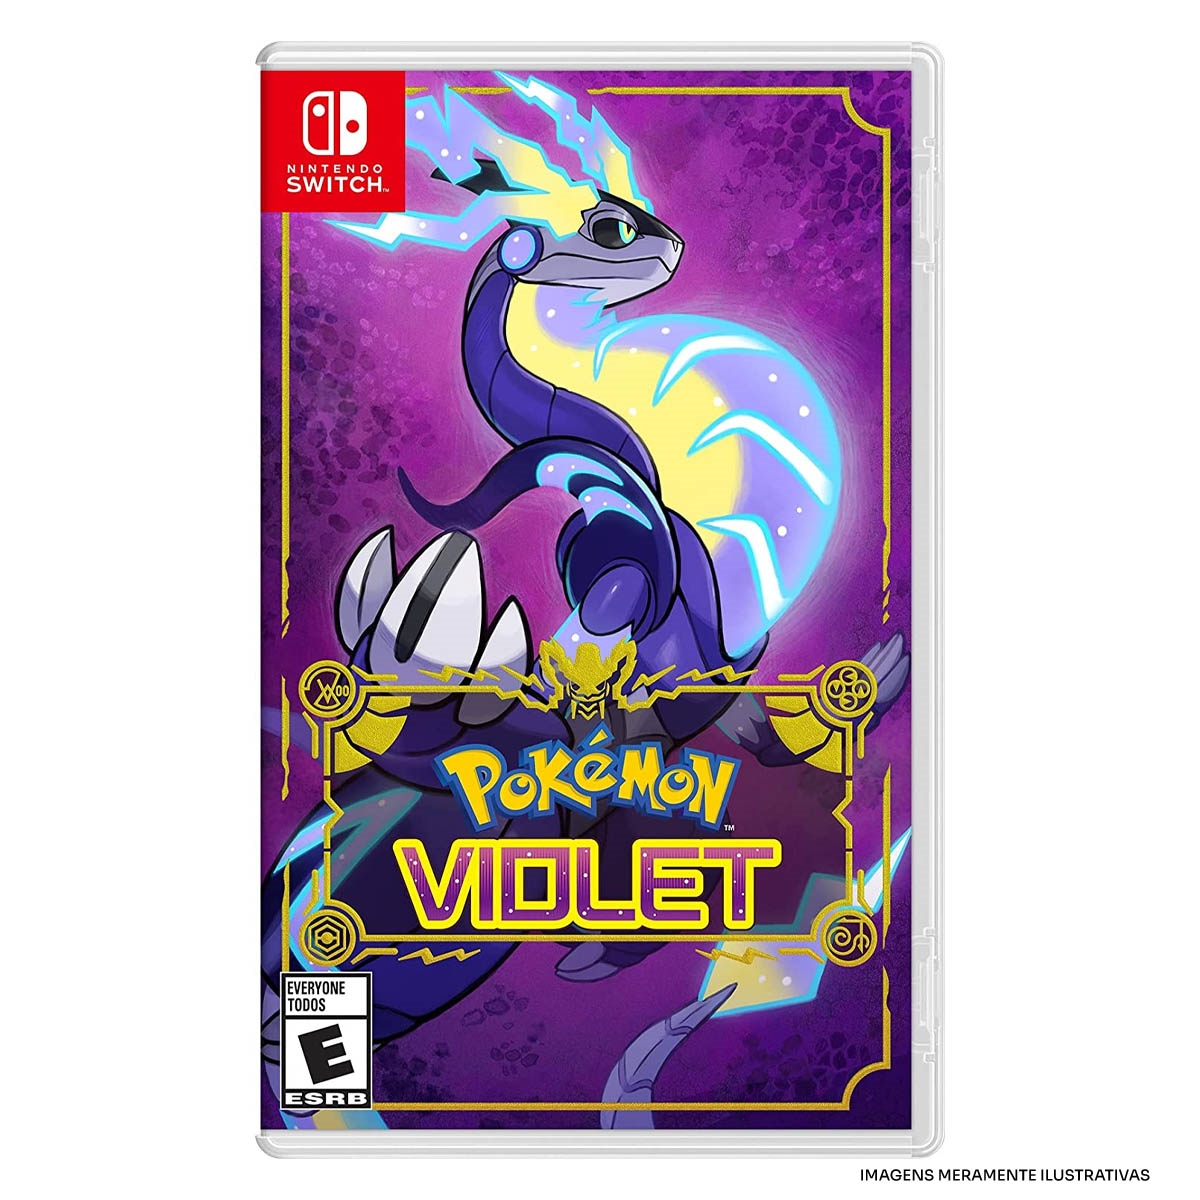 Pokémon Scarlet e Violet: Cyclizar e detalhes de gameplay revelados